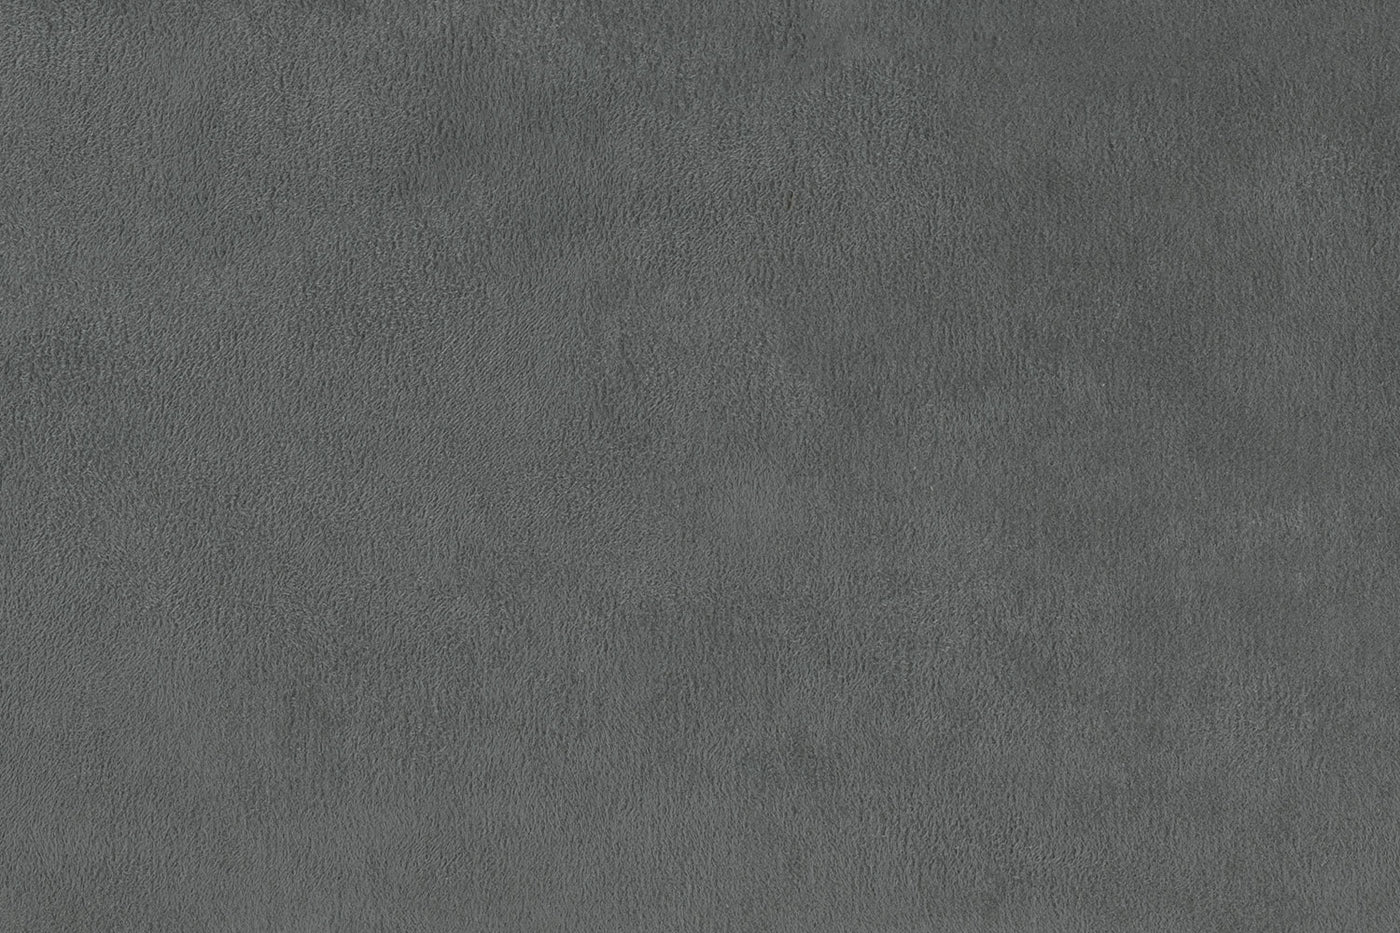 Collier Chair - Dark Grey